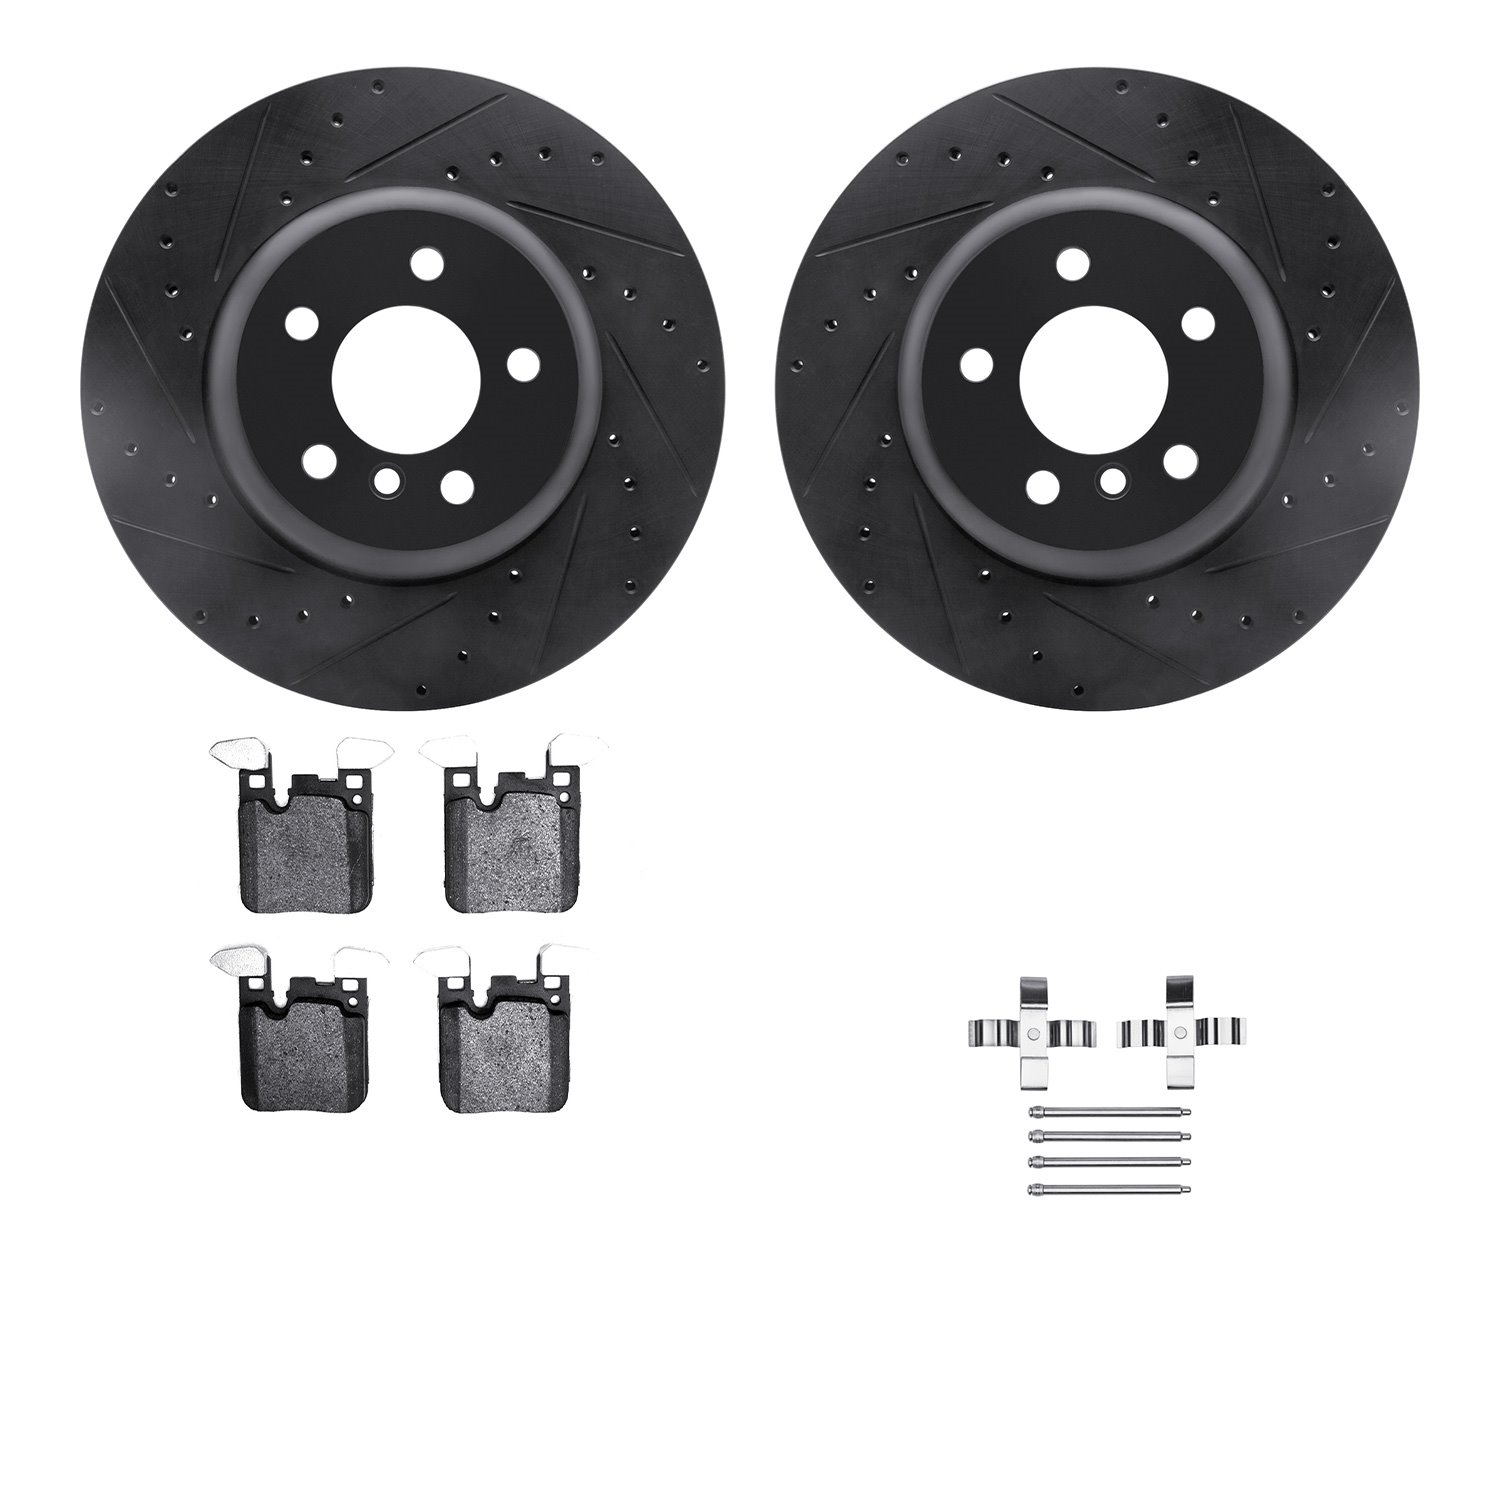 8612-31100 Drilled/Slotted Brake Rotors w/5000 Euro Ceramic Brake Pads Kit & Hardware [Black], 2013-2021 BMW, Position: Rear